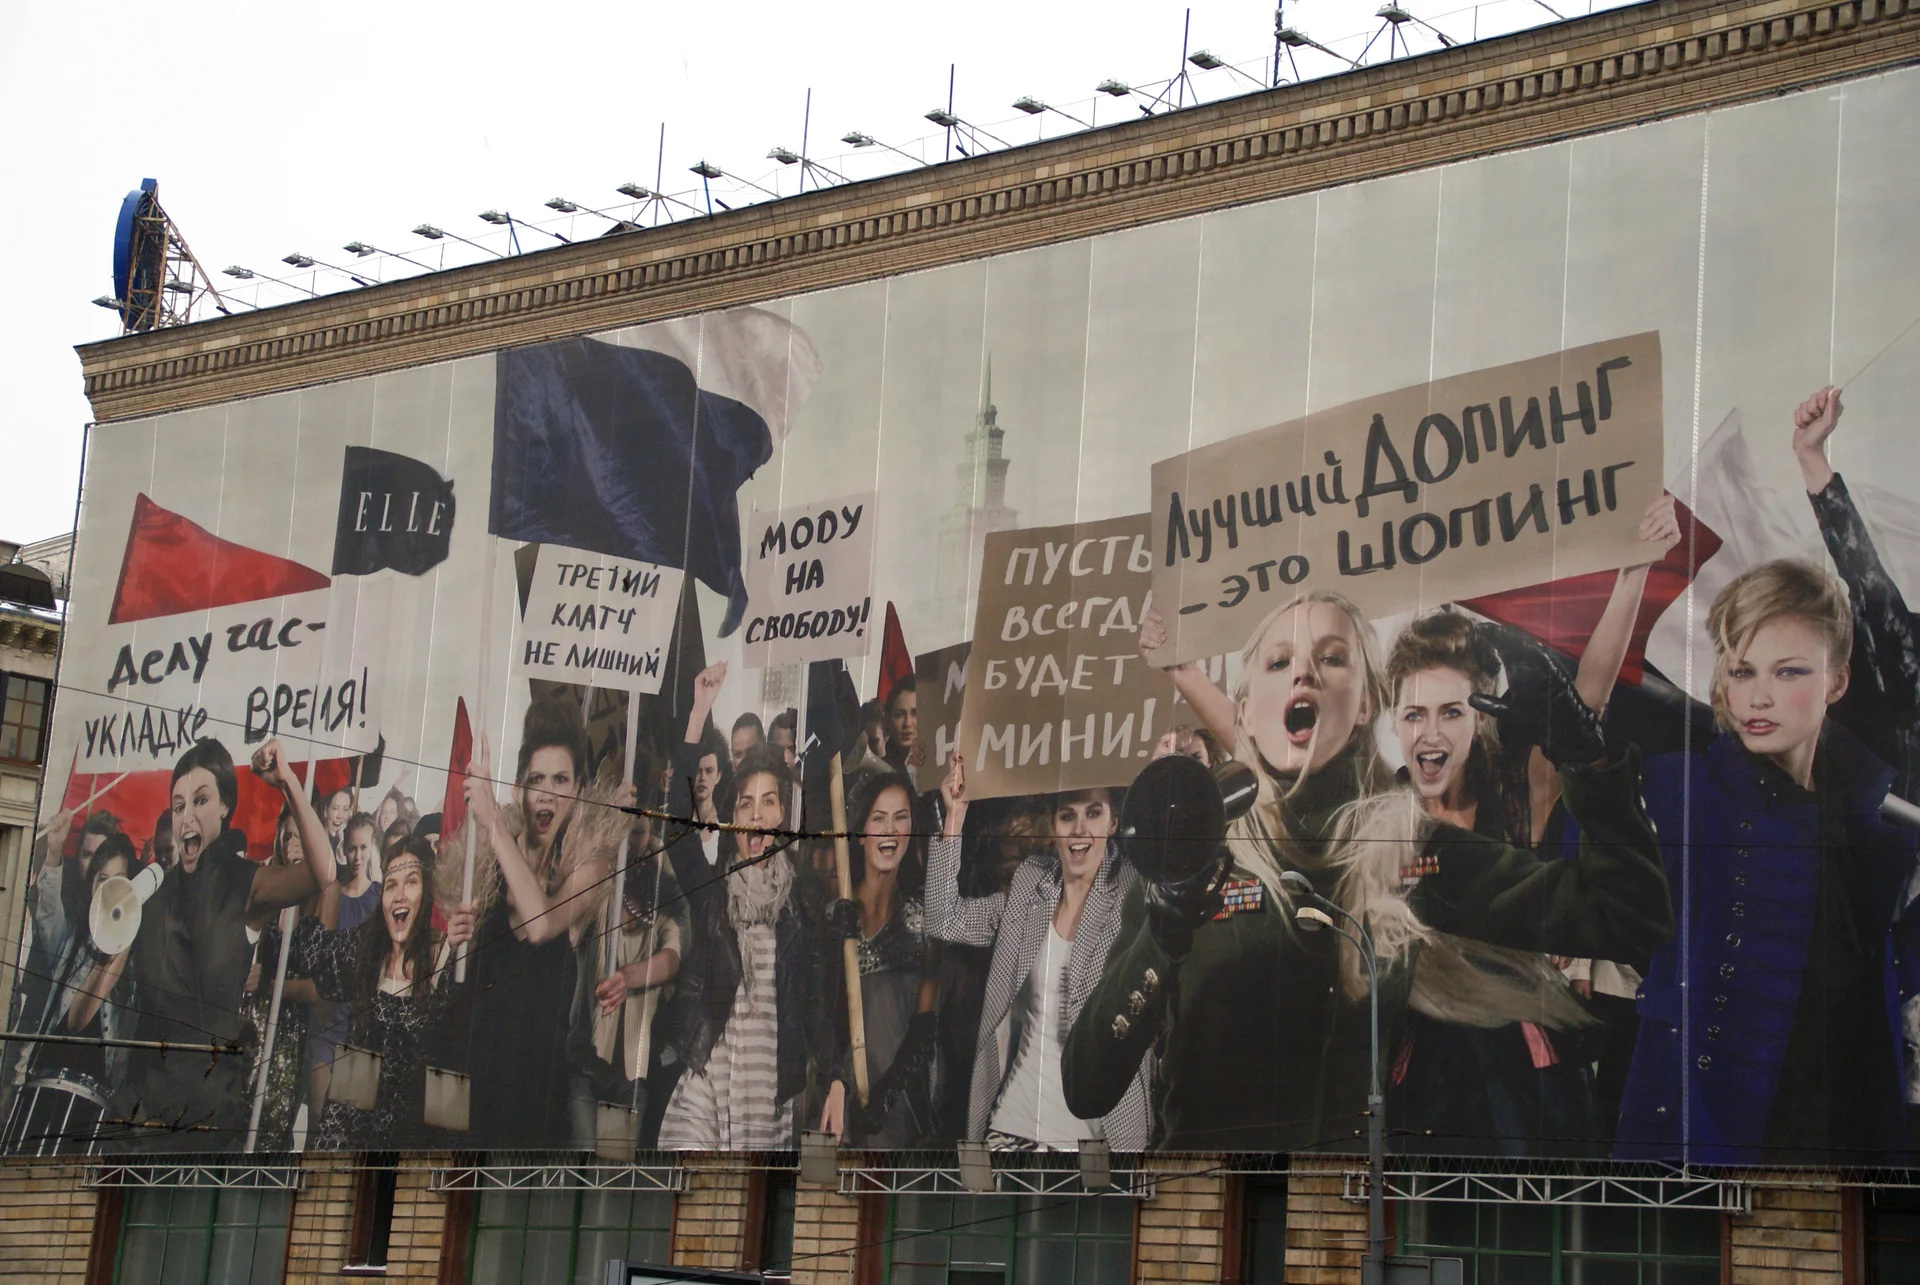 Moscou. Affiche promouvant la mode.